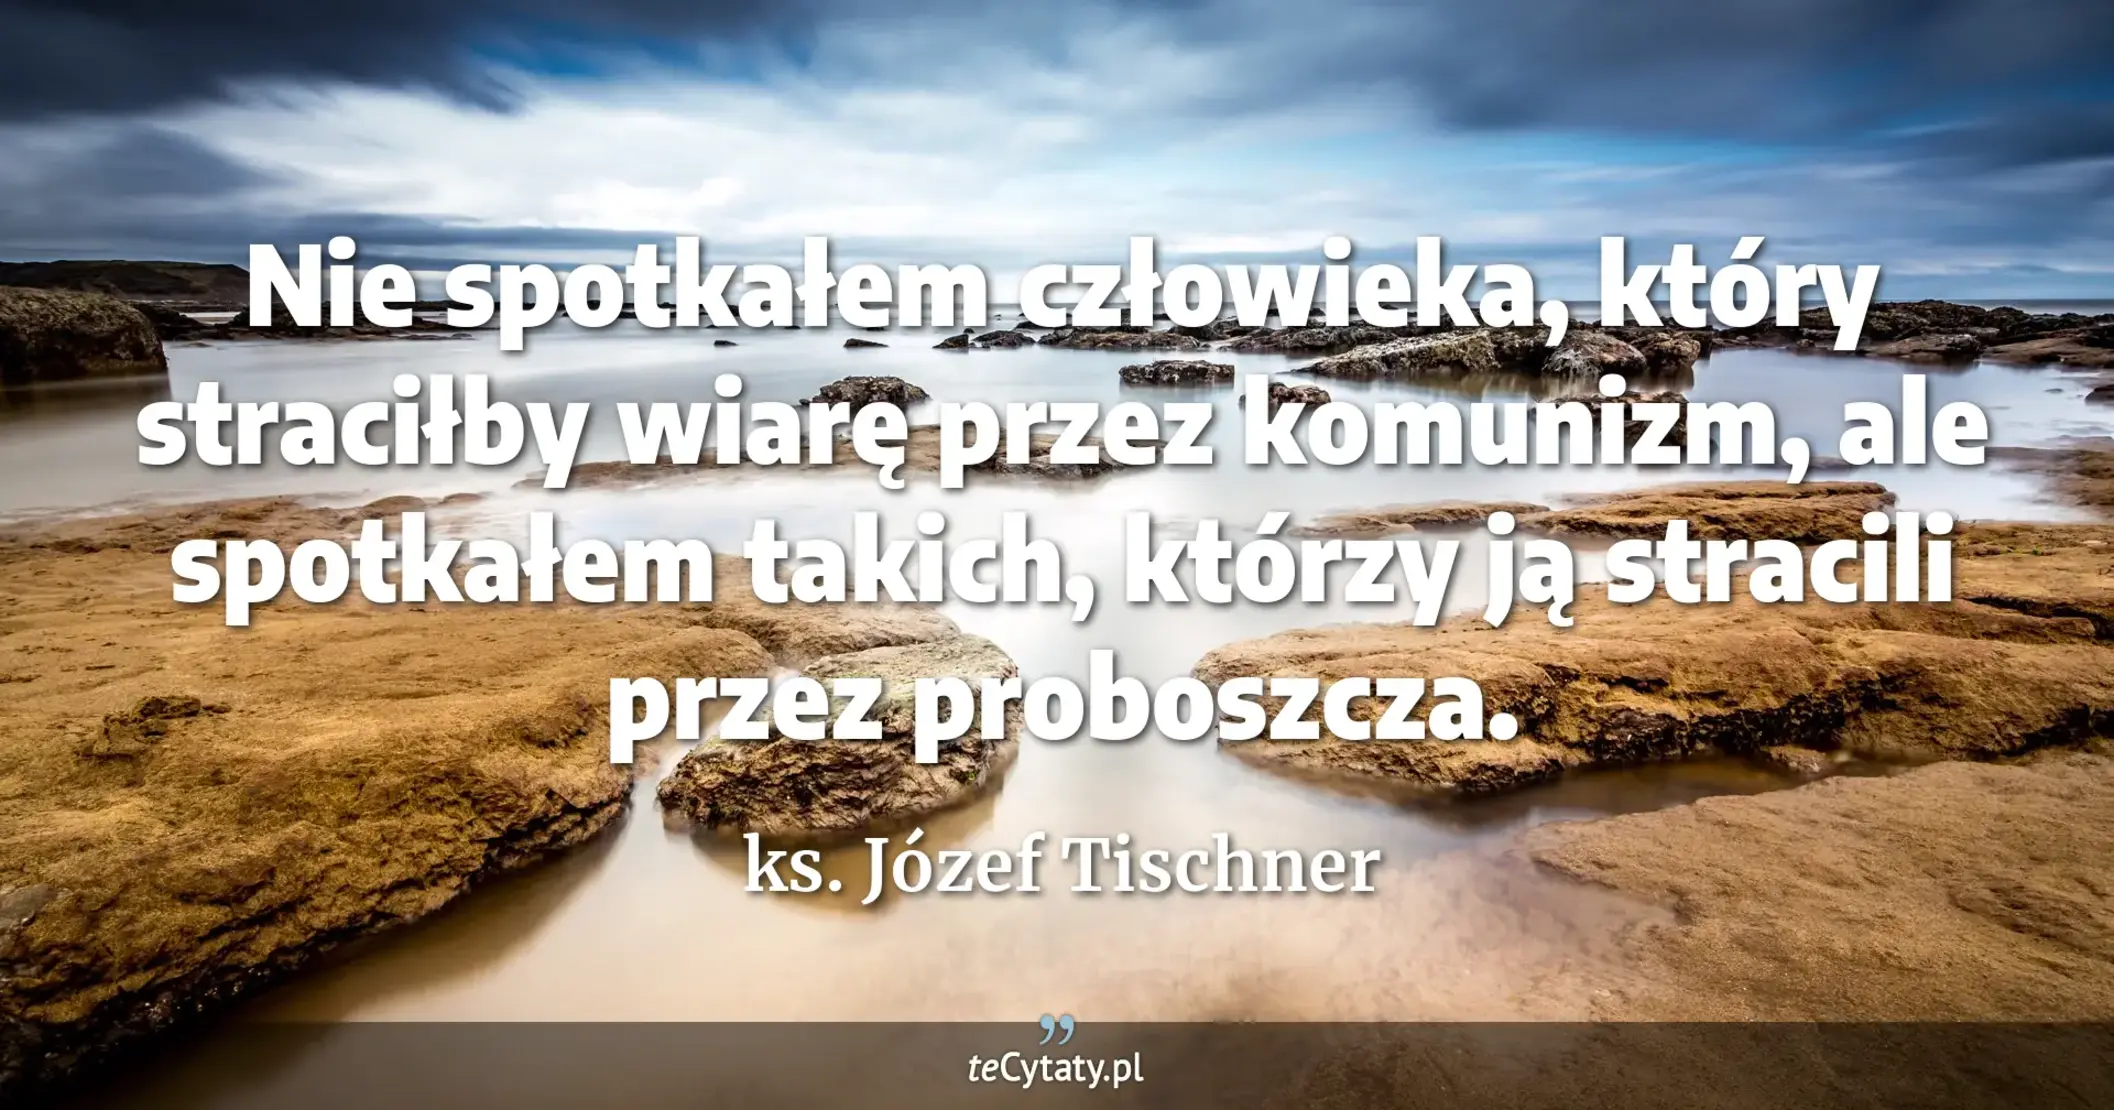 Nie spotkałem człowieka, który straciłby wiarę przez komunizm, ale spotkałem takich, którzy ją stracili przez proboszcza. - ks. Józef Tischner